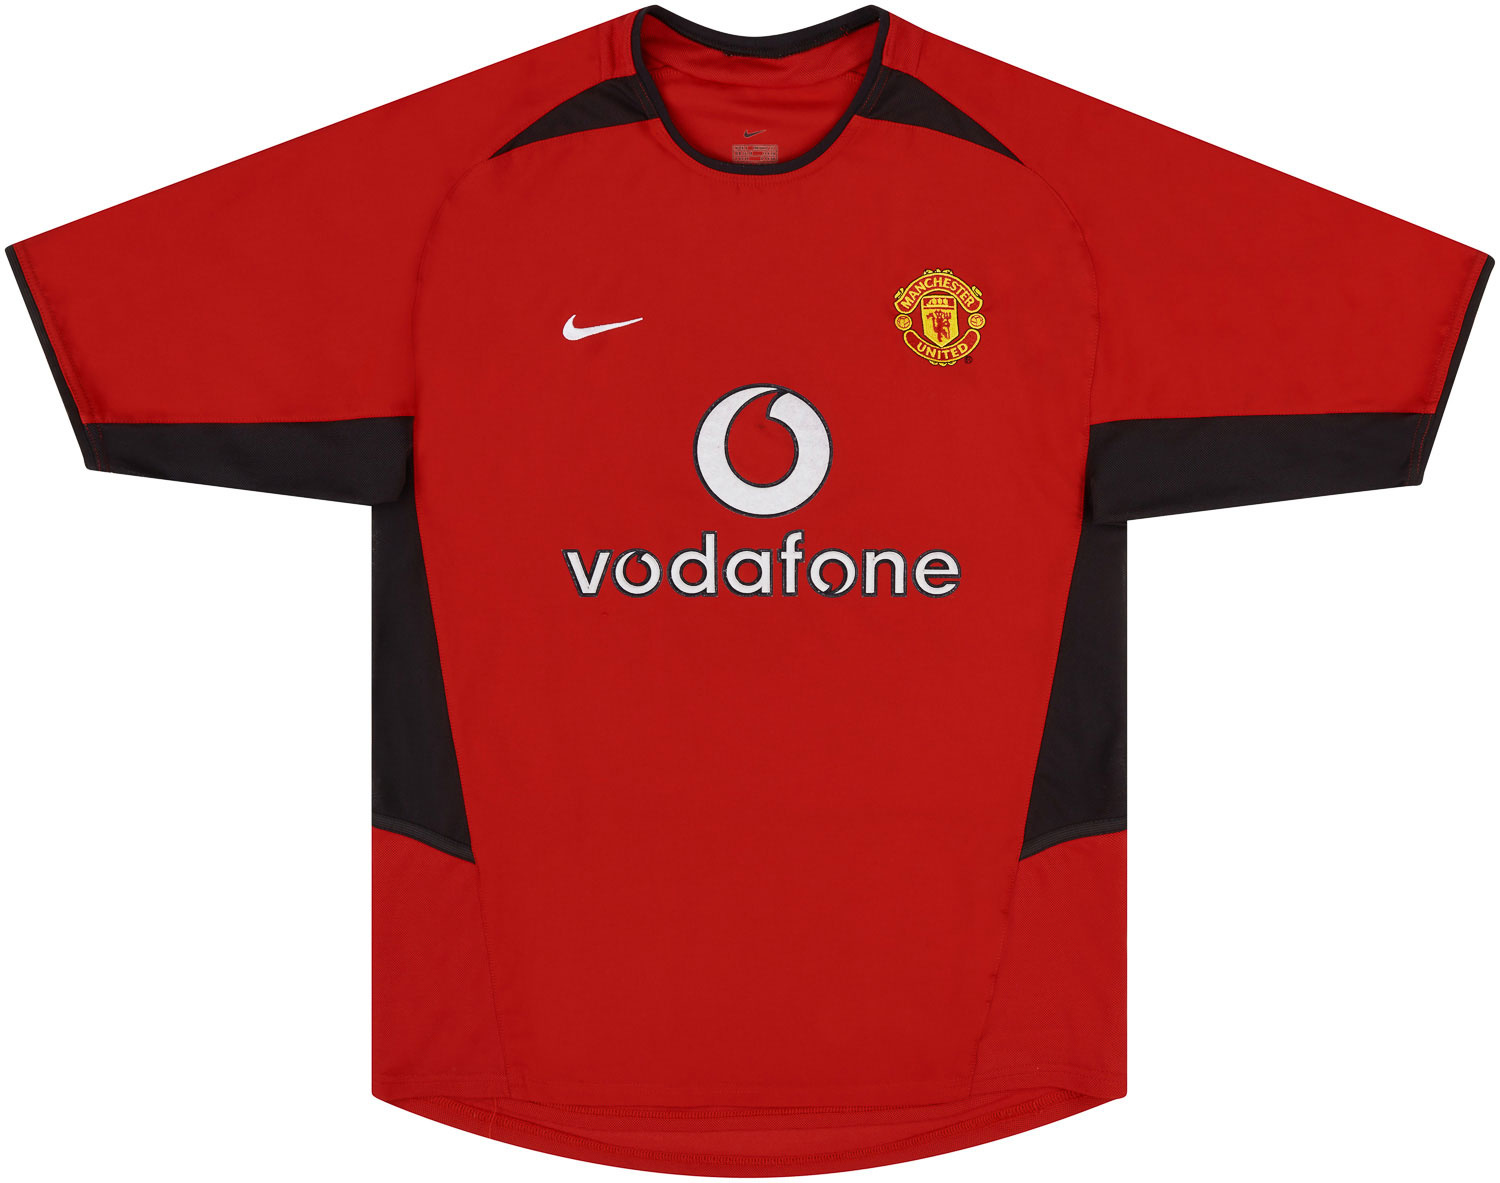 Manchester United Treino/Passeio camisa de futebol 1999 - 2000.